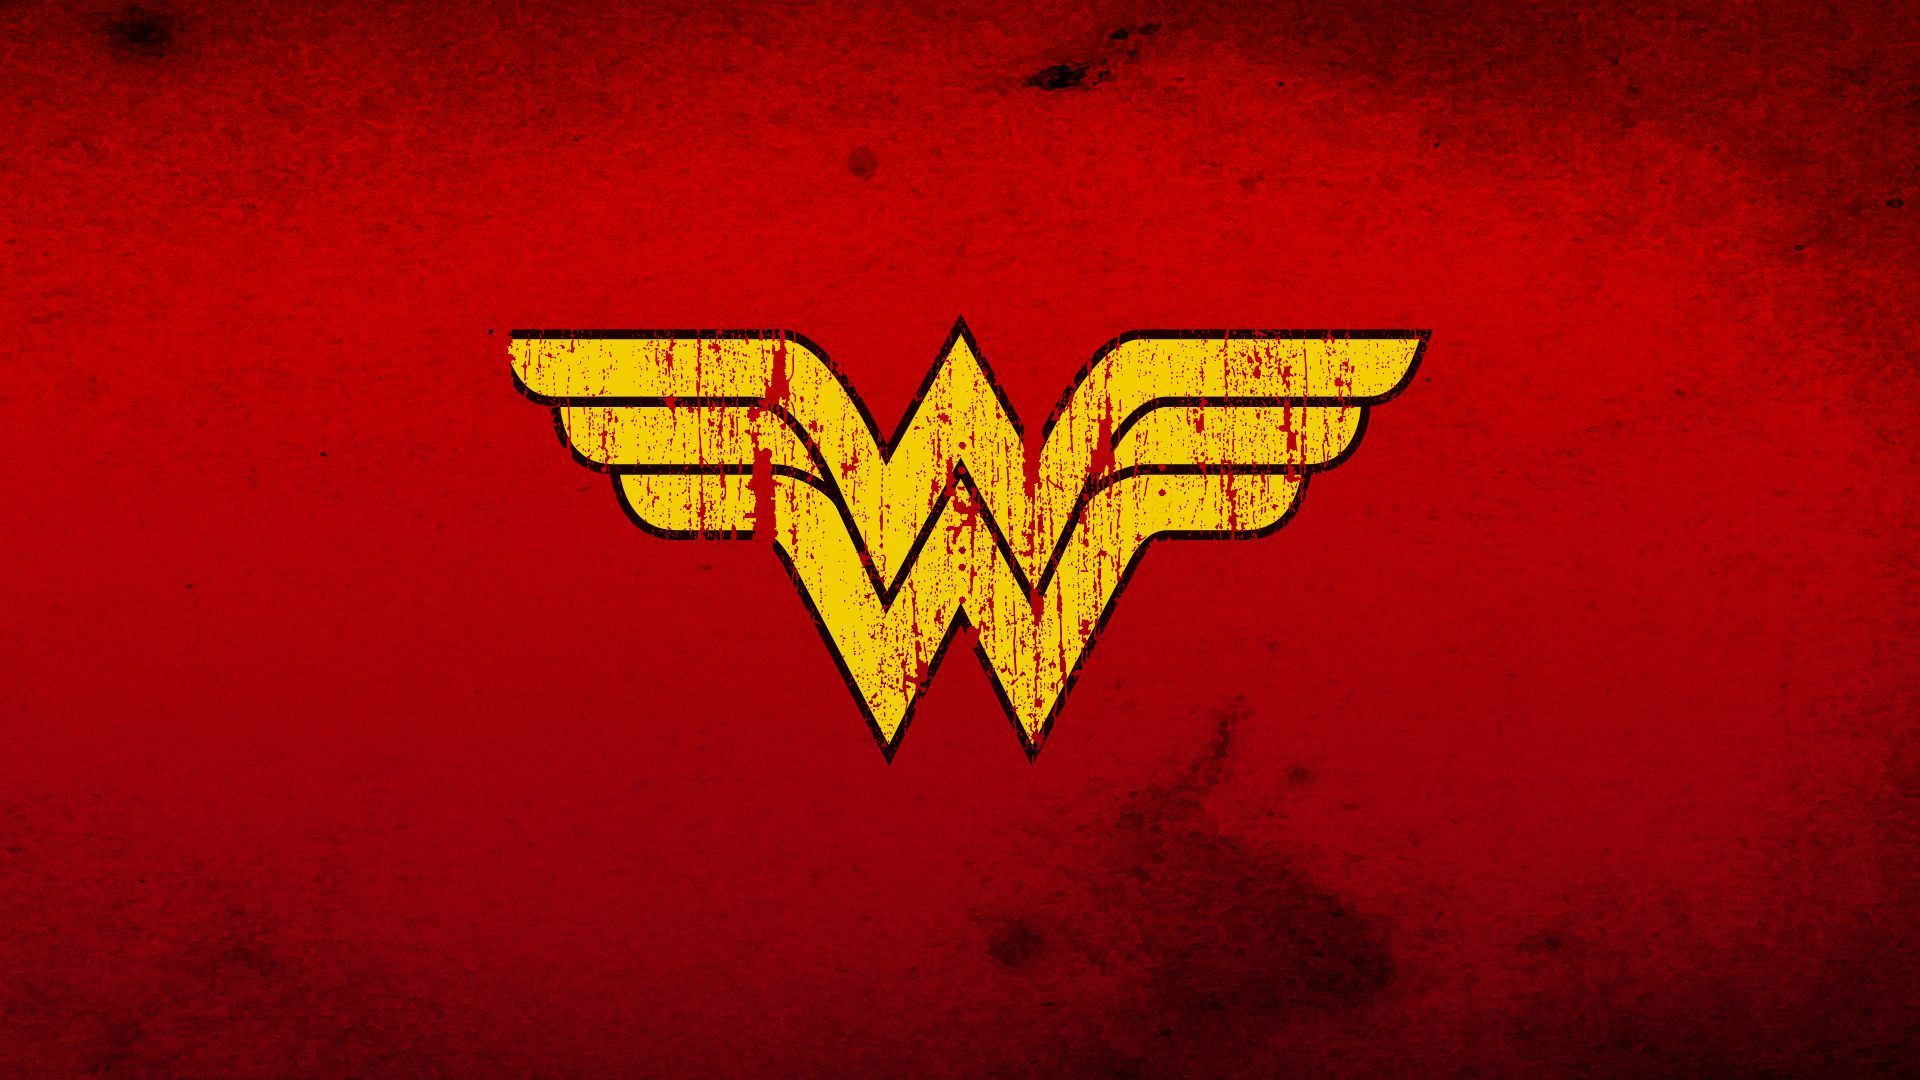 Wonder Woman Background Stars. Superman Wonder Woman Wallpaper, Wonder Woman Wallpaper and Stevie Wonder Wallpaper